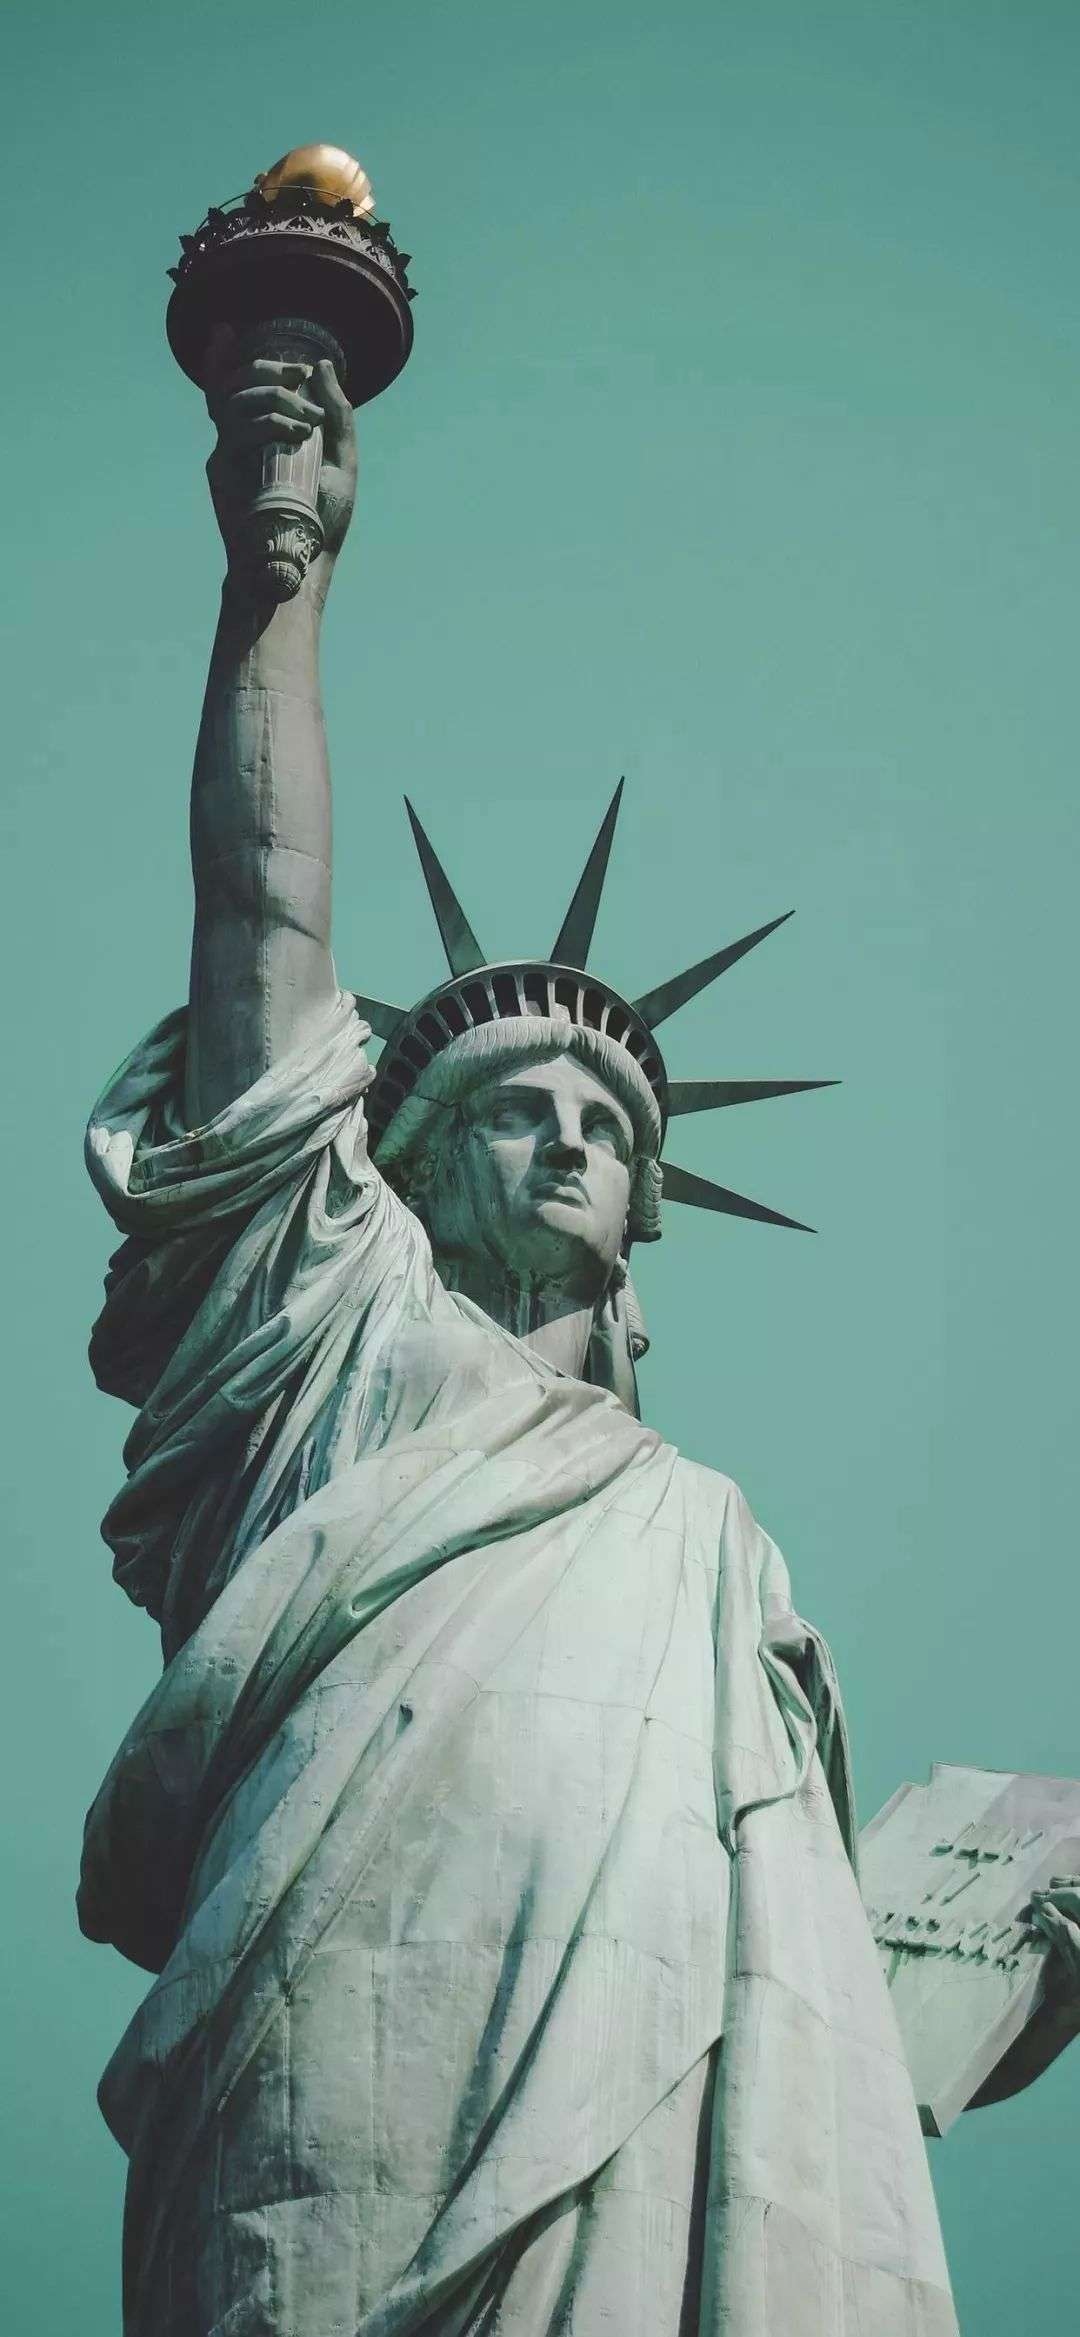 图片素材 : 自由女神像, 绿色, 蓝色, 自由岛, 美国, 平面, hdr, 雕像, 纪念碑, 天空, 雕塑, 建筑, 云, 塔, 国家历史 ...